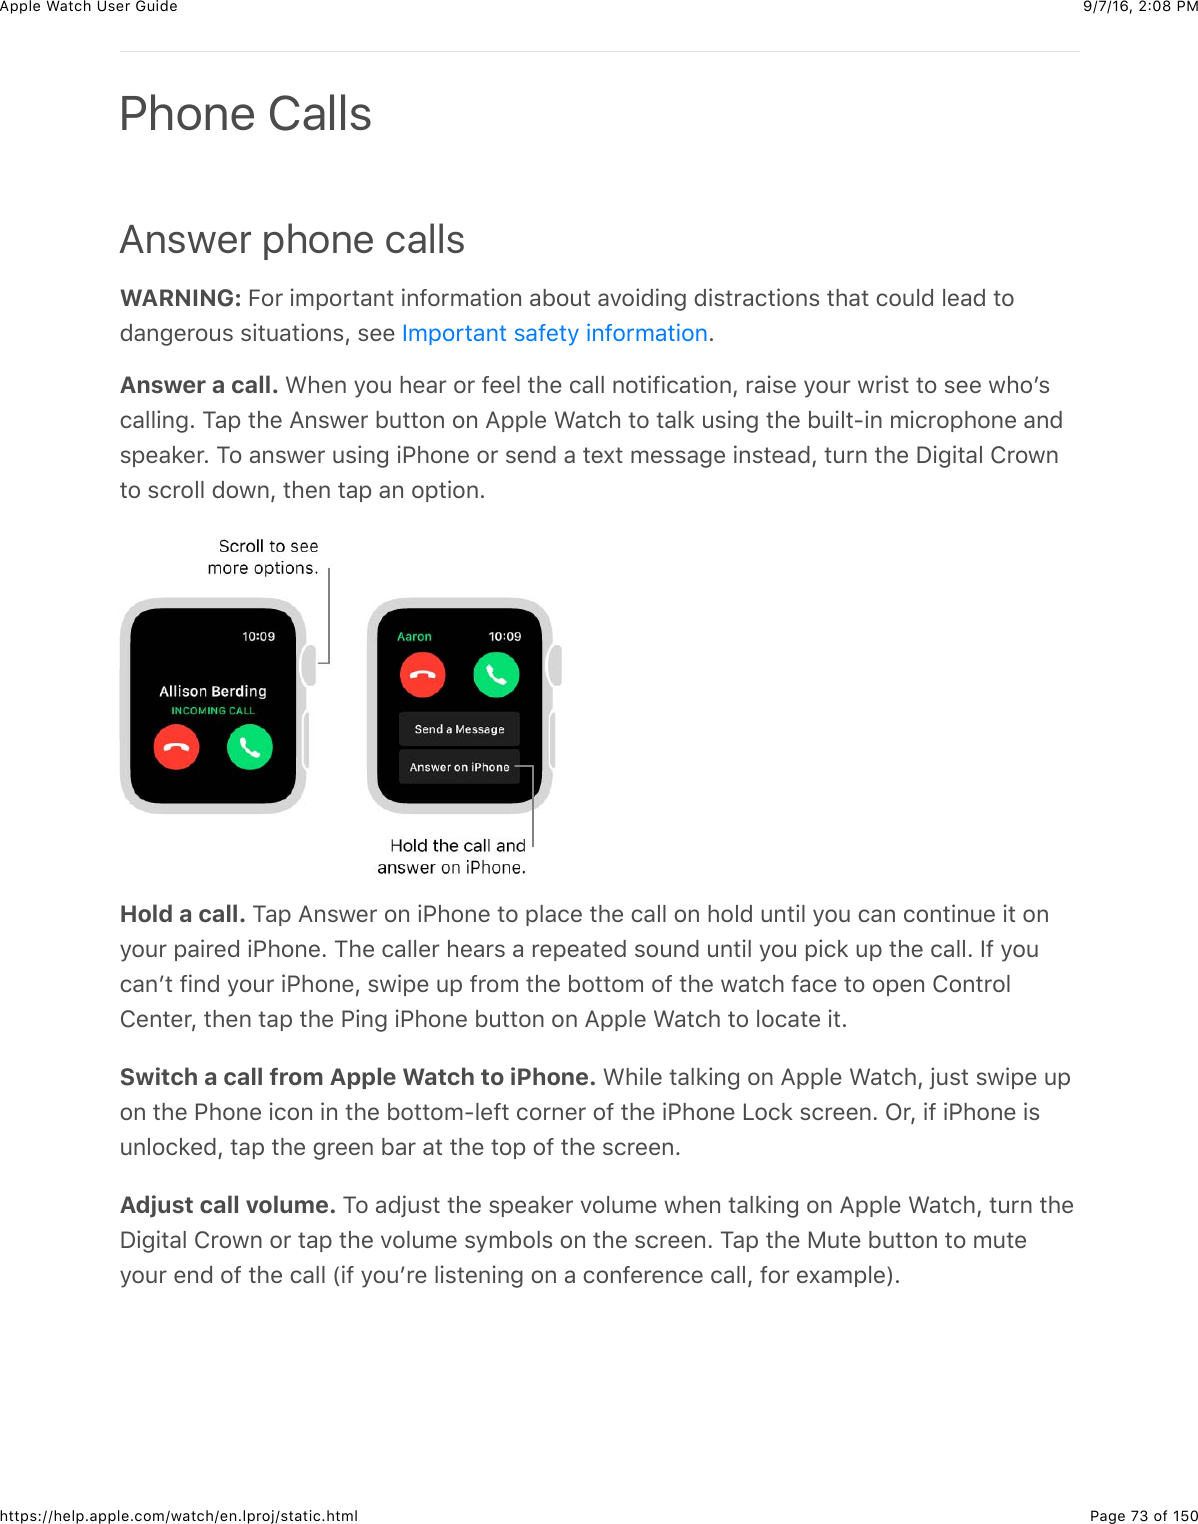 9/7/16, 2)08 PMApple Watch User GuidePage 73 of 150https://help.apple.com/watch/en.lproj/static.htmlAnswer phone callsWARNING: E#*&amp;+52#*3&apos;,3&amp;+,@#*5&apos;3+#,&amp;&apos;B#43&amp;&apos;.#+0+,-&amp;0+$3*&apos;(3+#,$&amp;3)&apos;3&amp;(#4&quot;0&amp;&quot;%&apos;0&amp;3#0&apos;,-%*#4$&amp;$+34&apos;3+#,$J&amp;$%%&amp; CAnswer a call. &gt;)%,&amp;/#4&amp;)%&apos;*&amp;#*&amp;@%%&quot;&amp;3)%&amp;(&apos;&quot;&quot;&amp;,#3+@+(&apos;3+#,J&amp;*&apos;+$%&amp;/#4*&amp;7*+$3&amp;3#&amp;$%%&amp;7)#W$(&apos;&quot;&quot;+,-C&amp;1&apos;2&amp;3)%&amp;=,$7%*&amp;B433#,&amp;#,&amp;=22&quot;%&amp;&gt;&apos;3()&amp;3#&amp;3&apos;&quot;8&amp;4$+,-&amp;3)%&amp;B4+&quot;3?+,&amp;5+(*#2)#,%&amp;&apos;,0$2%&apos;8%*C&amp;1#&amp;&apos;,$7%*&amp;4$+,-&amp;+G)#,%&amp;#*&amp;$%,0&amp;&apos;&amp;3%U3&amp;5%$$&apos;-%&amp;+,$3%&apos;0J&amp;34*,&amp;3)%&amp;I+-+3&apos;&quot;&amp;!*#7,3#&amp;$(*#&quot;&quot;&amp;0#7,J&amp;3)%,&amp;3&apos;2&amp;&apos;,&amp;#23+#,CHold a call. 1&apos;2&amp;=,$7%*&amp;#,&amp;+G)#,%&amp;3#&amp;2&quot;&apos;(%&amp;3)%&amp;(&apos;&quot;&quot;&amp;#,&amp;)#&quot;0&amp;4,3+&quot;&amp;/#4&amp;(&apos;,&amp;(#,3+,4%&amp;+3&amp;#,/#4*&amp;2&apos;+*%0&amp;+G)#,%C&amp;1)%&amp;(&apos;&quot;&quot;%*&amp;)%&apos;*$&amp;&apos;&amp;*%2%&apos;3%0&amp;$#4,0&amp;4,3+&quot;&amp;/#4&amp;2+(8&amp;42&amp;3)%&amp;(&apos;&quot;&quot;C&amp;Y@&amp;/#4(&apos;,W3&amp;@+,0&amp;/#4*&amp;+G)#,%J&amp;$7+2%&amp;42&amp;@*#5&amp;3)%&amp;B#33#5&amp;#@&amp;3)%&amp;7&apos;3()&amp;@&apos;(%&amp;3#&amp;#2%,&amp;!#,3*#&quot;!%,3%*J&amp;3)%,&amp;3&apos;2&amp;3)%&amp;G+,-&amp;+G)#,%&amp;B433#,&amp;#,&amp;=22&quot;%&amp;&gt;&apos;3()&amp;3#&amp;&quot;#(&apos;3%&amp;+3CSwitch a call from Apple Watch to iPhone. &gt;)+&quot;%&amp;3&apos;&quot;8+,-&amp;#,&amp;=22&quot;%&amp;&gt;&apos;3()J&amp;O4$3&amp;$7+2%&amp;42#,&amp;3)%&amp;G)#,%&amp;+(#,&amp;+,&amp;3)%&amp;B#33#5?&quot;%@3&amp;(#*,%*&amp;#@&amp;3)%&amp;+G)#,%&amp;&lt;#(8&amp;$(*%%,C&amp;L*J&amp;+@&amp;+G)#,%&amp;+$4,&quot;#(8%0J&amp;3&apos;2&amp;3)%&amp;-*%%,&amp;B&apos;*&amp;&apos;3&amp;3)%&amp;3#2&amp;#@&amp;3)%&amp;$(*%%,CAdjust call volume. 1#&amp;&apos;0O4$3&amp;3)%&amp;$2%&apos;8%*&amp;.#&quot;45%&amp;7)%,&amp;3&apos;&quot;8+,-&amp;#,&amp;=22&quot;%&amp;&gt;&apos;3()J&amp;34*,&amp;3)%I+-+3&apos;&quot;&amp;!*#7,&amp;#*&amp;3&apos;2&amp;3)%&amp;.#&quot;45%&amp;$/5B#&quot;$&amp;#,&amp;3)%&amp;$(*%%,C&amp;1&apos;2&amp;3)%&amp;F43%&amp;B433#,&amp;3#&amp;543%/#4*&amp;%,0&amp;#@&amp;3)%&amp;(&apos;&quot;&quot;&amp;P+@&amp;/#4W*%&amp;&quot;+$3%,+,-&amp;#,&amp;&apos;&amp;(#,@%*%,(%&amp;(&apos;&quot;&quot;J&amp;@#*&amp;%U&apos;52&quot;%RCPhone CallsY52#*3&apos;,3&amp;$&apos;@%3/&amp;+,@#*5&apos;3+#,